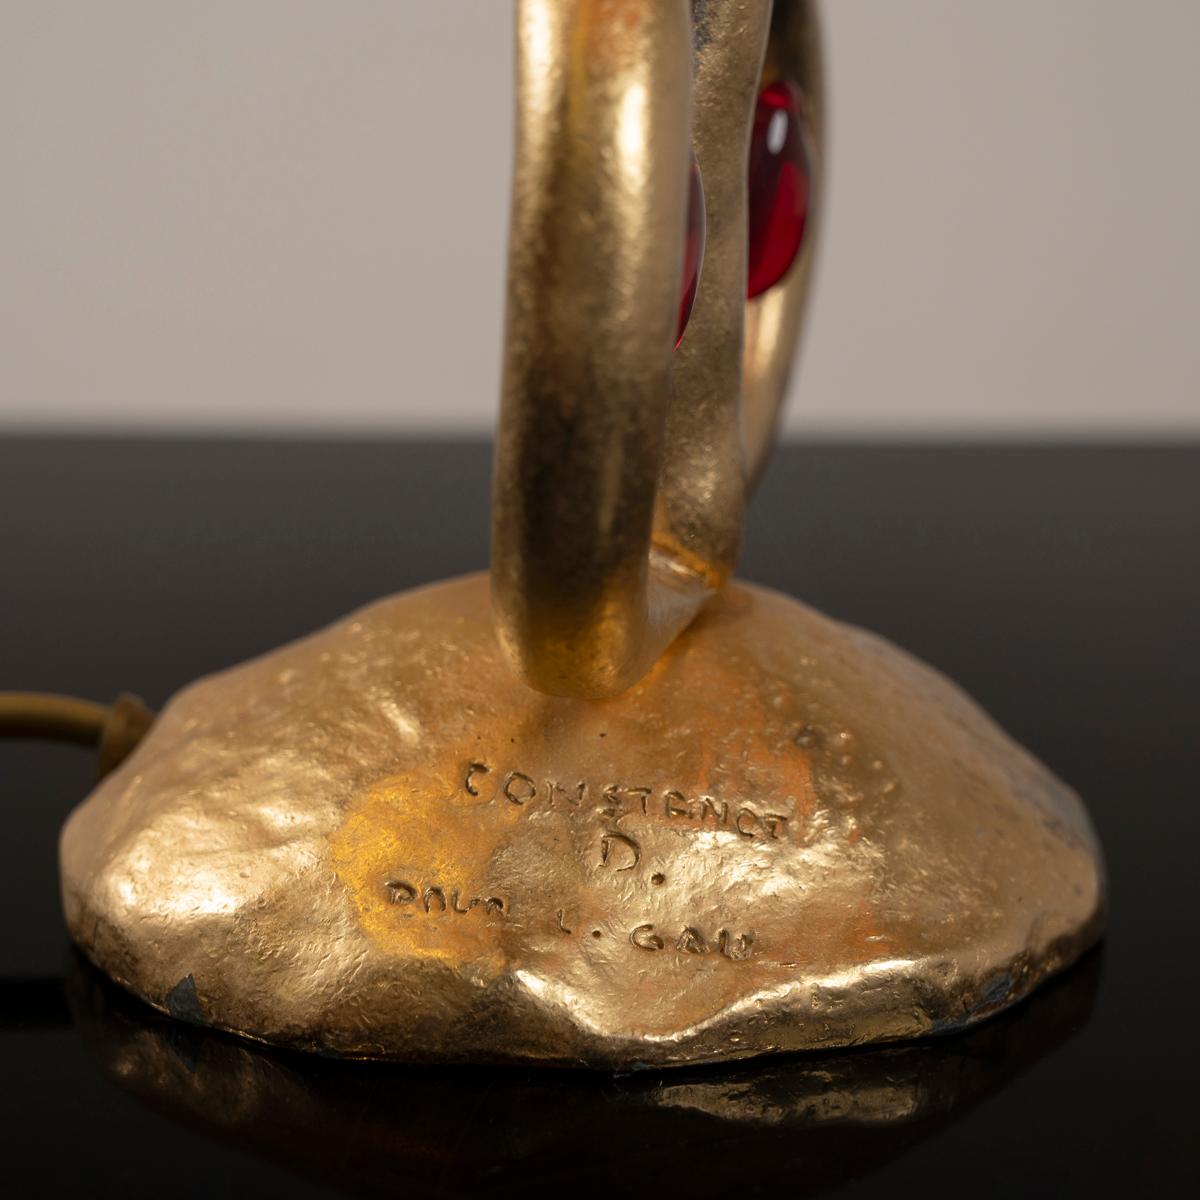 Lampe de table de la maison Louis Gau metal dorée signé Louis Gau et Constance D.

Hauteur : 65 cm diamètre : 30 cm